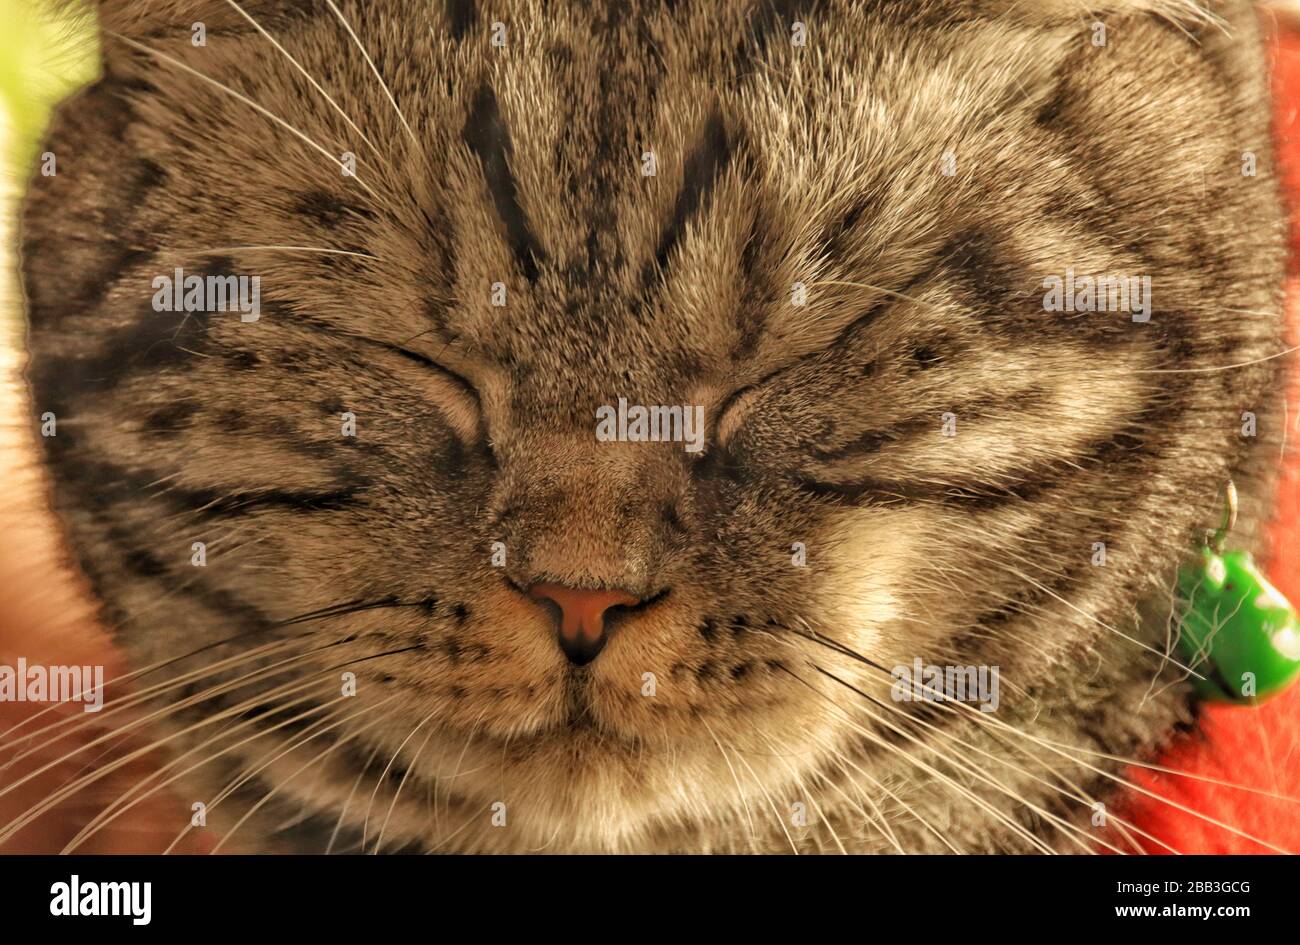 Flauschige und schläfrige gelangweilte Katze während der Hausquarantäne und Selbstisolation aufgrund des globalen Ausbruchs der Kovid-19-Pandemie Stockfoto